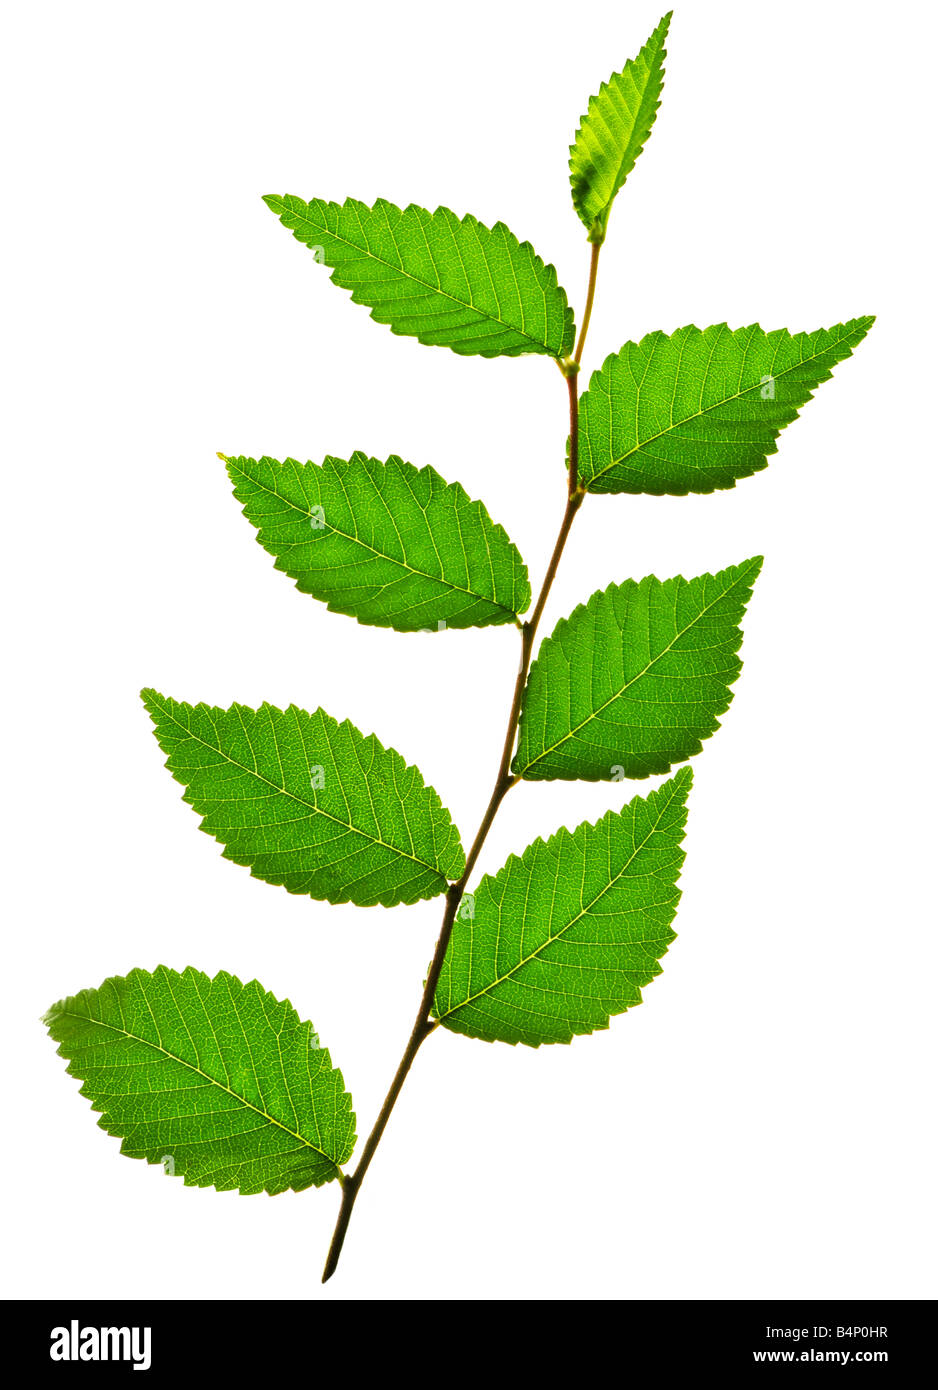 Branche d'arbre avec des feuilles vertes isolé sur fond blanc Banque D'Images